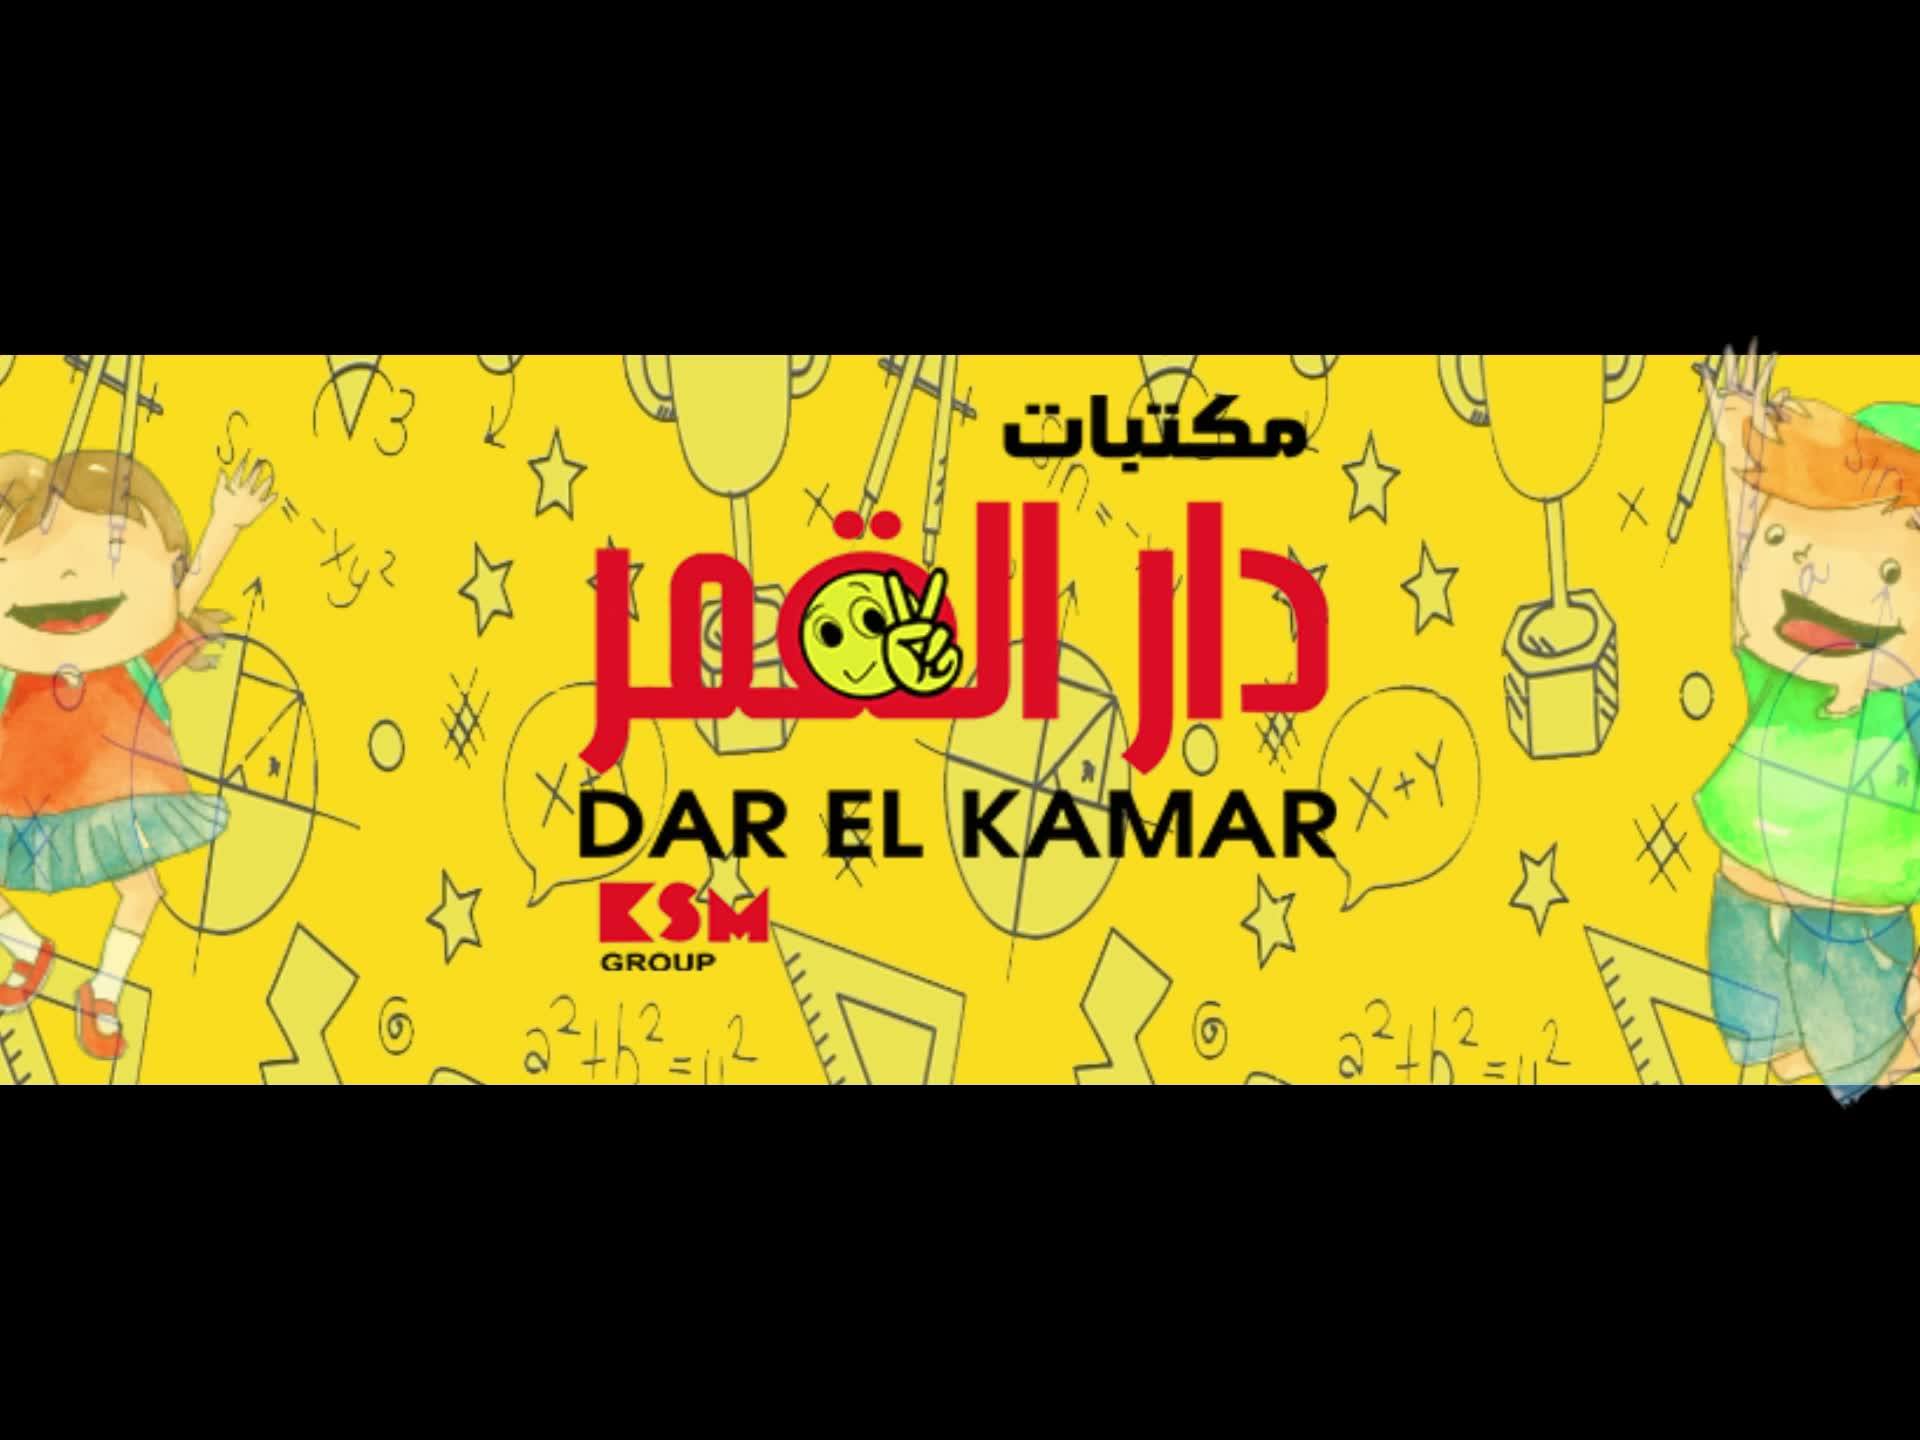 Dar El Kamar